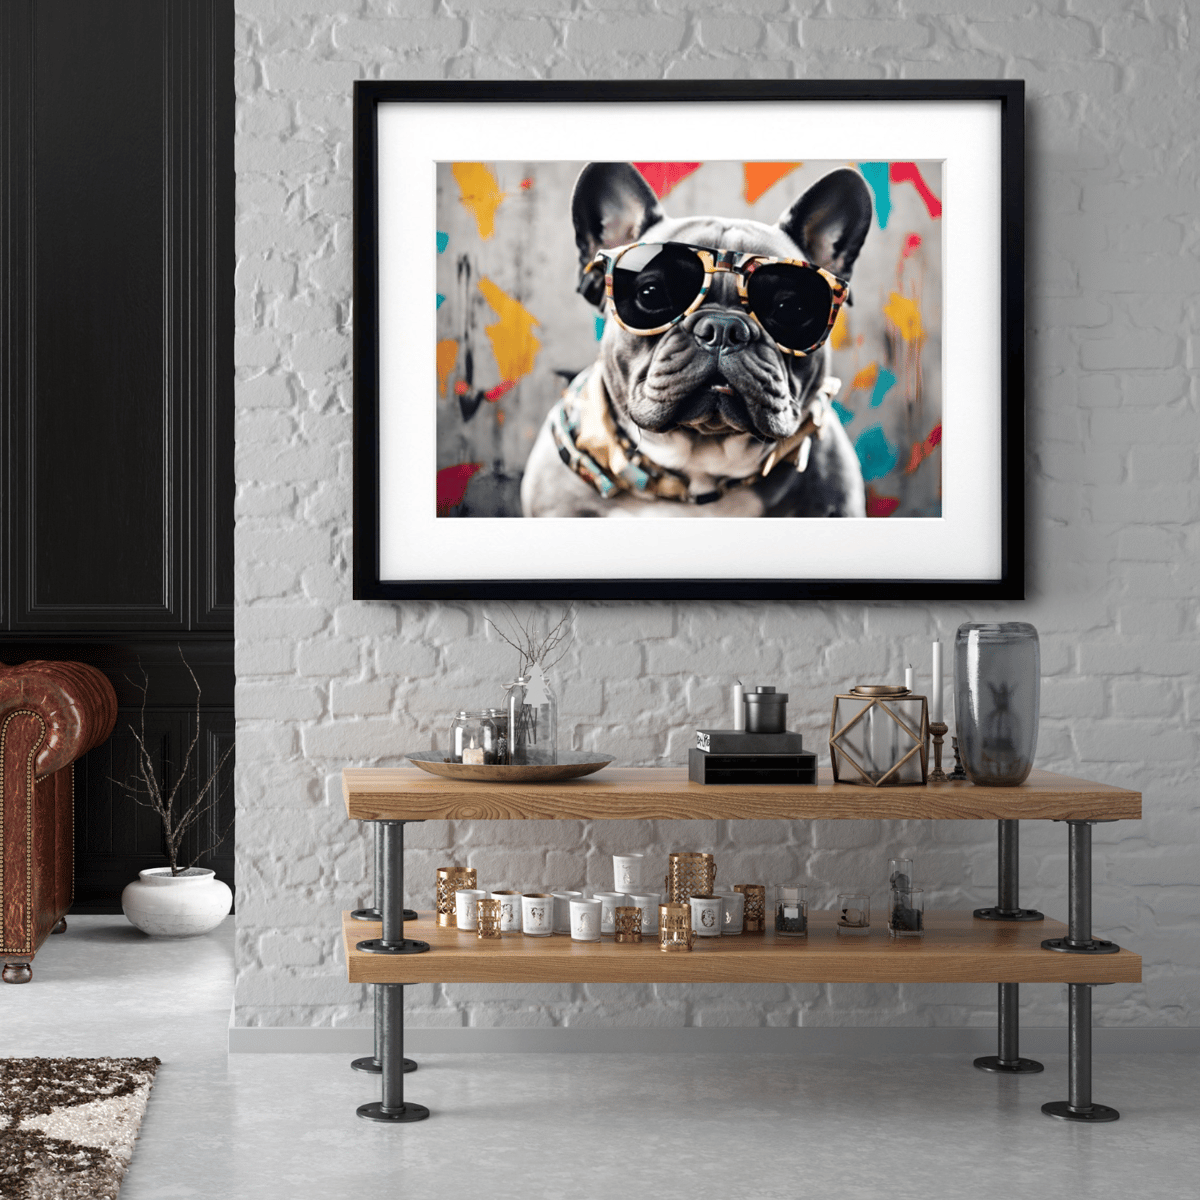 ドッグアート・ドッグ・犬・アニマル・動物・フレンチブルドッグ A4,A3,A2サイズ アートポスター、マット、額縁セット